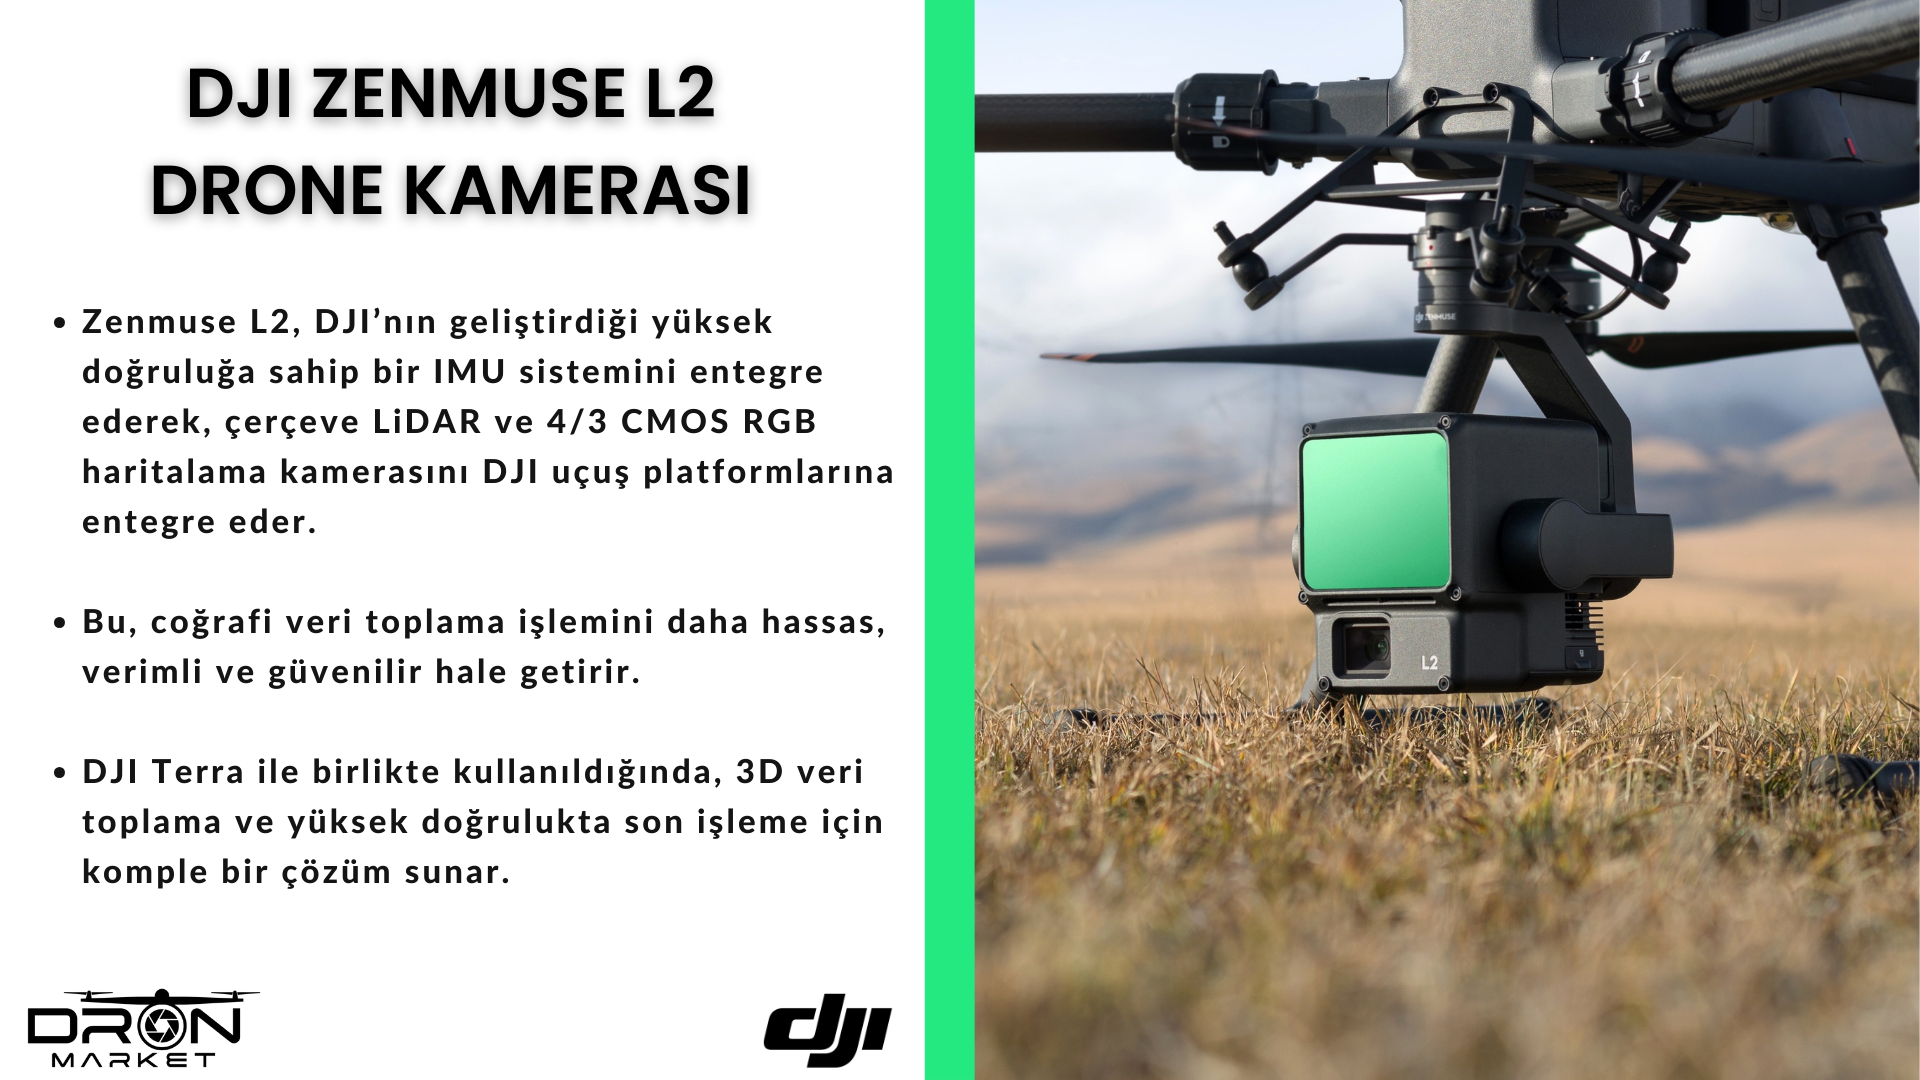 DJI Zenmuse L2 Drone KAmerası